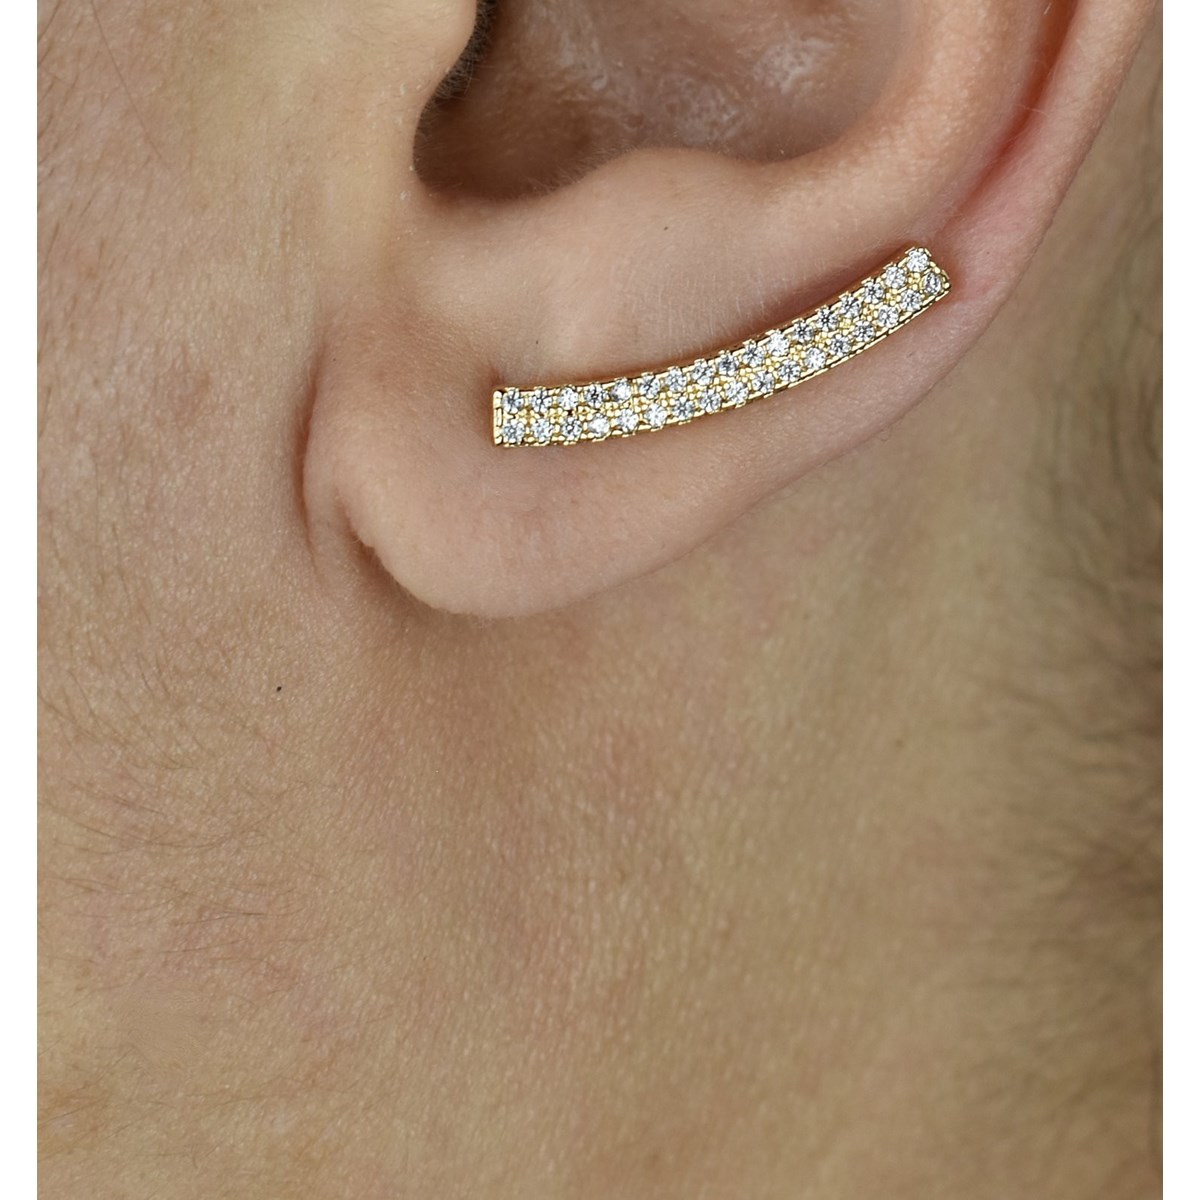 Boucles d'oreilles grimpantes barre 2 rangs contour de lobe serti d'oxydes de zirconium Plaqué OR 750 3 microns - vue 2